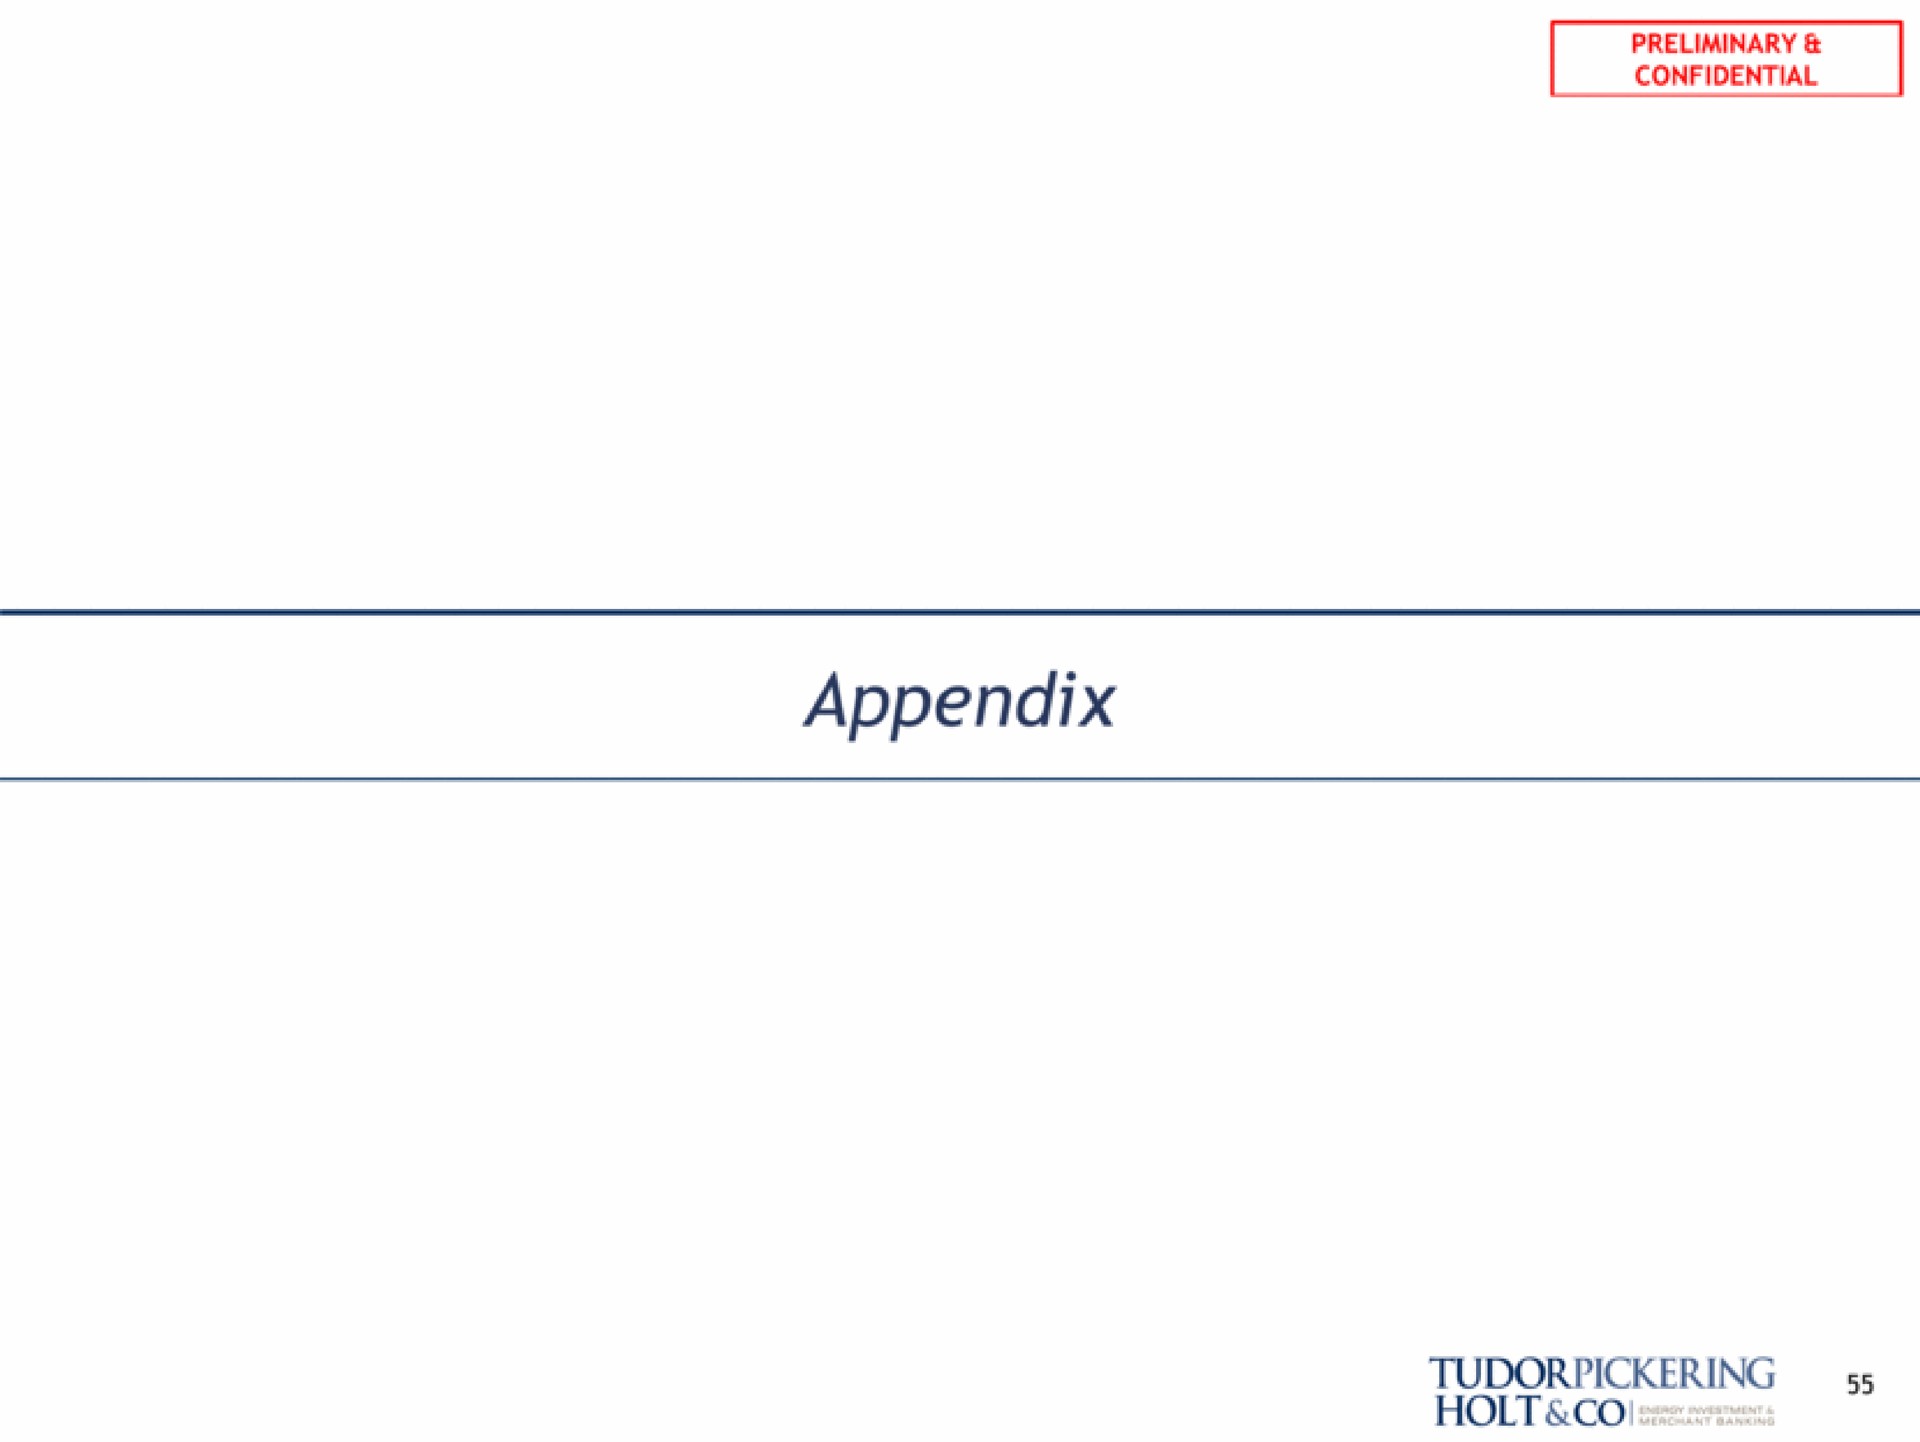 appendix holt | Tudor, Pickering, Holt & Co